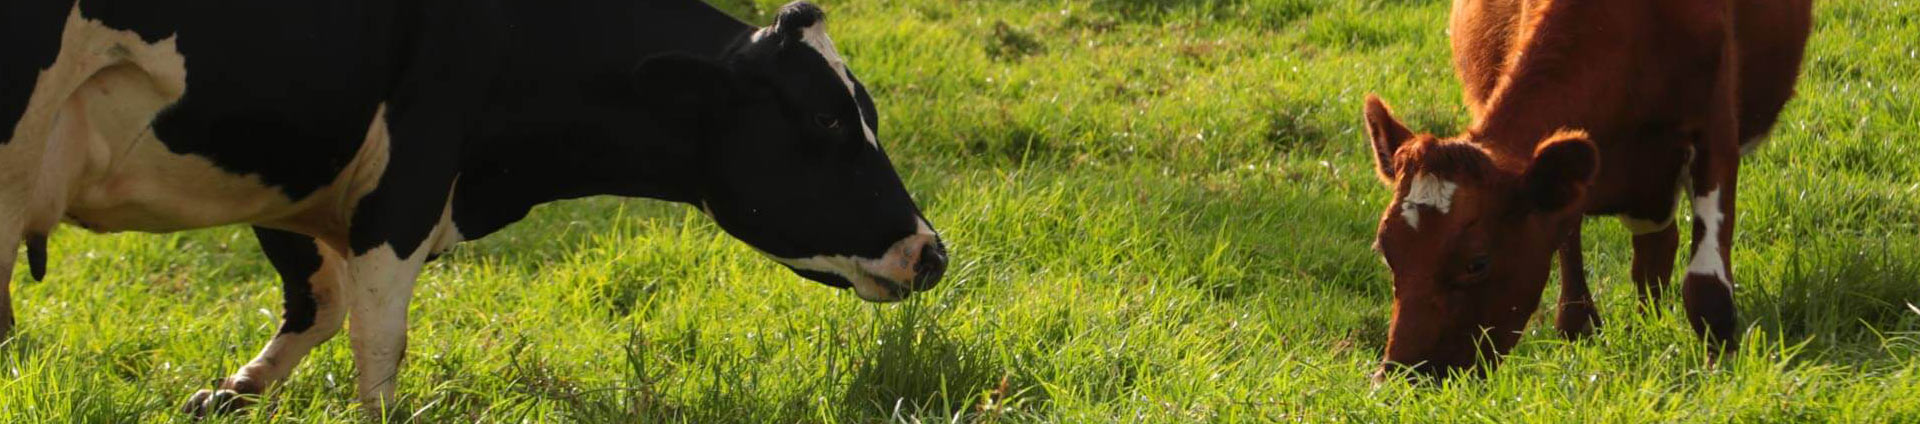 Mejoramiento genético para vacas